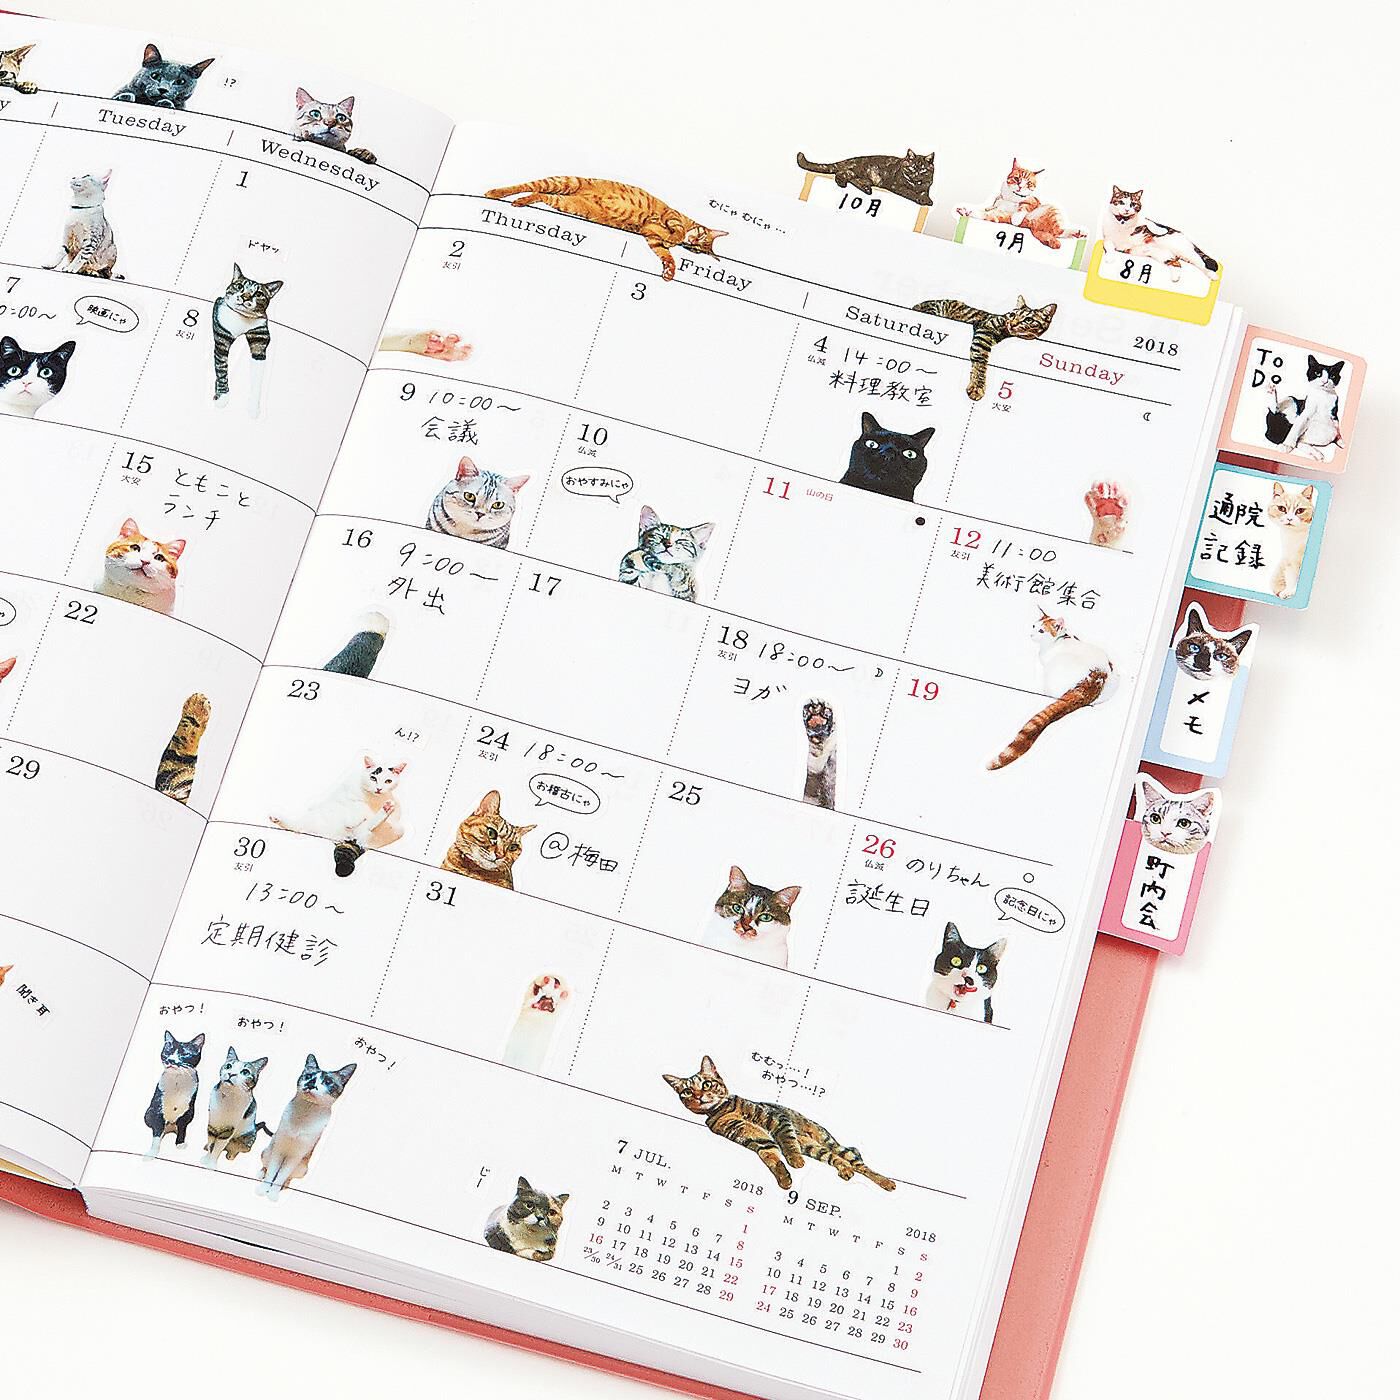 猫部|「猫部トーク」の猫さんたちとつくった手帳であそぶ猫シールの会